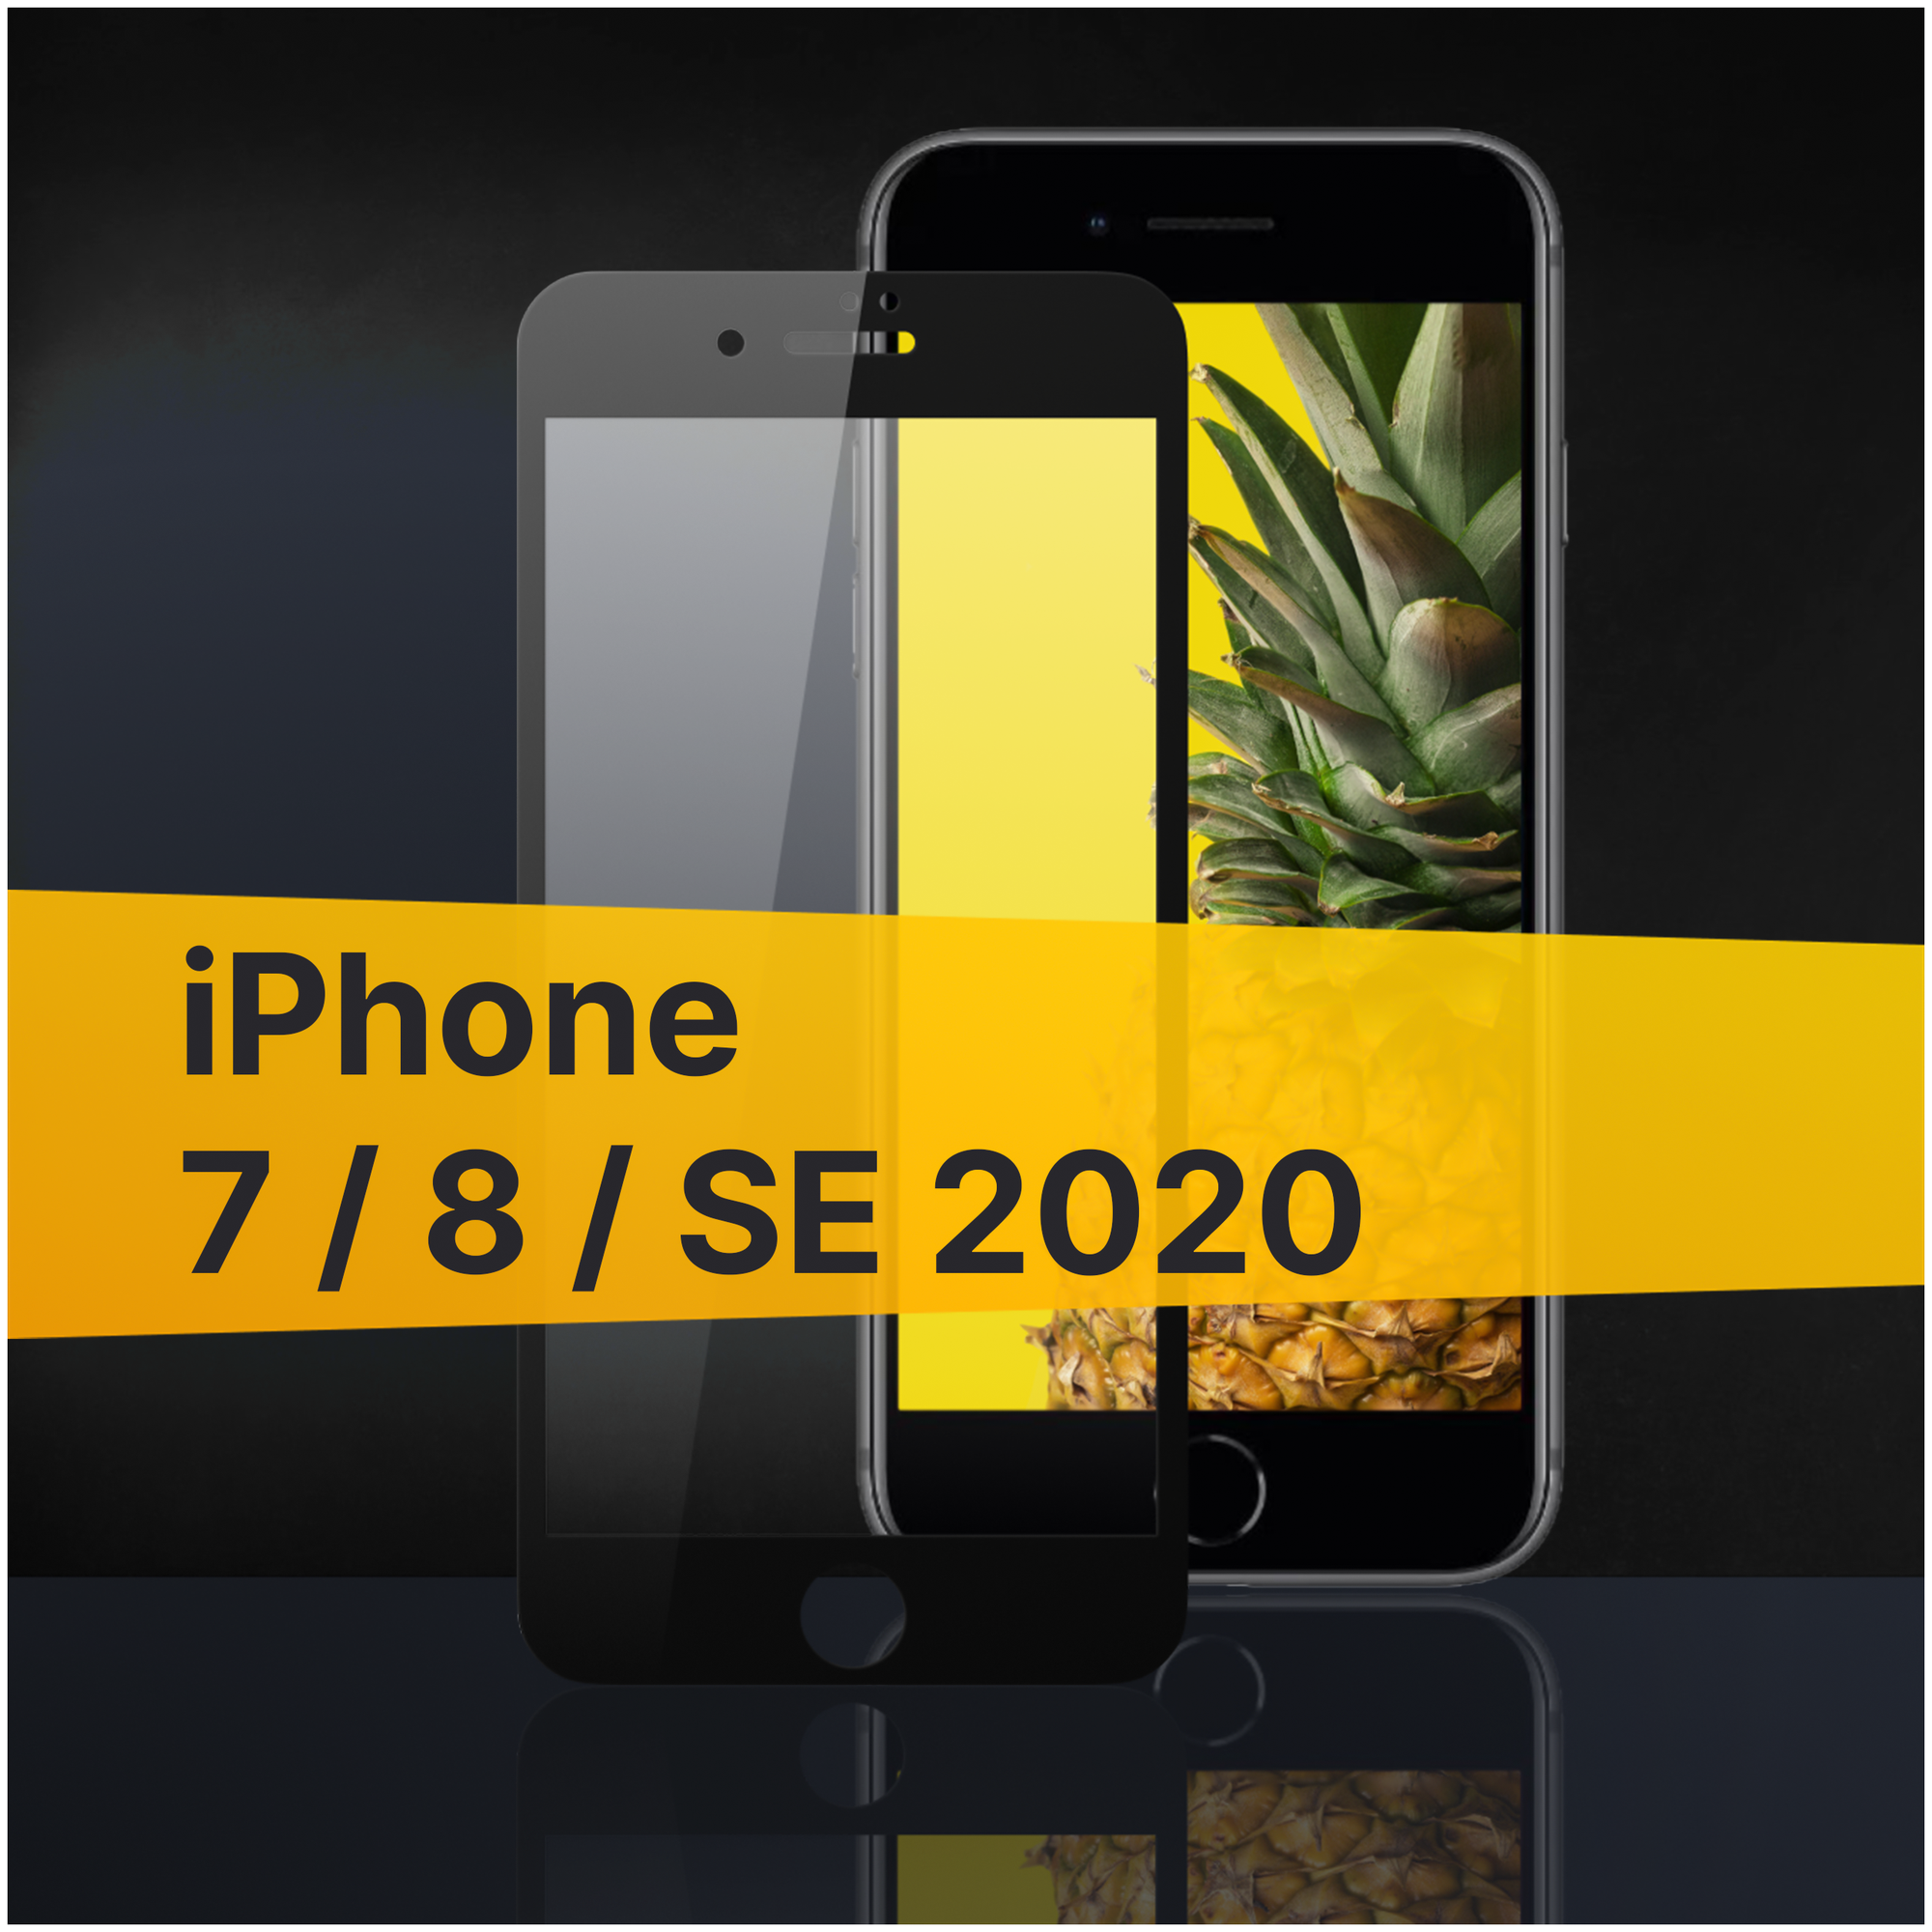 Противоударное защитное стекло для телефона Apple iPhone 7, 8 и SE 2020 / Полноклеевое 3D стекло с олеофобным покрытием на смартфон Эпл Айфон 7, 8 и СЕ 2020 с черной рамкой